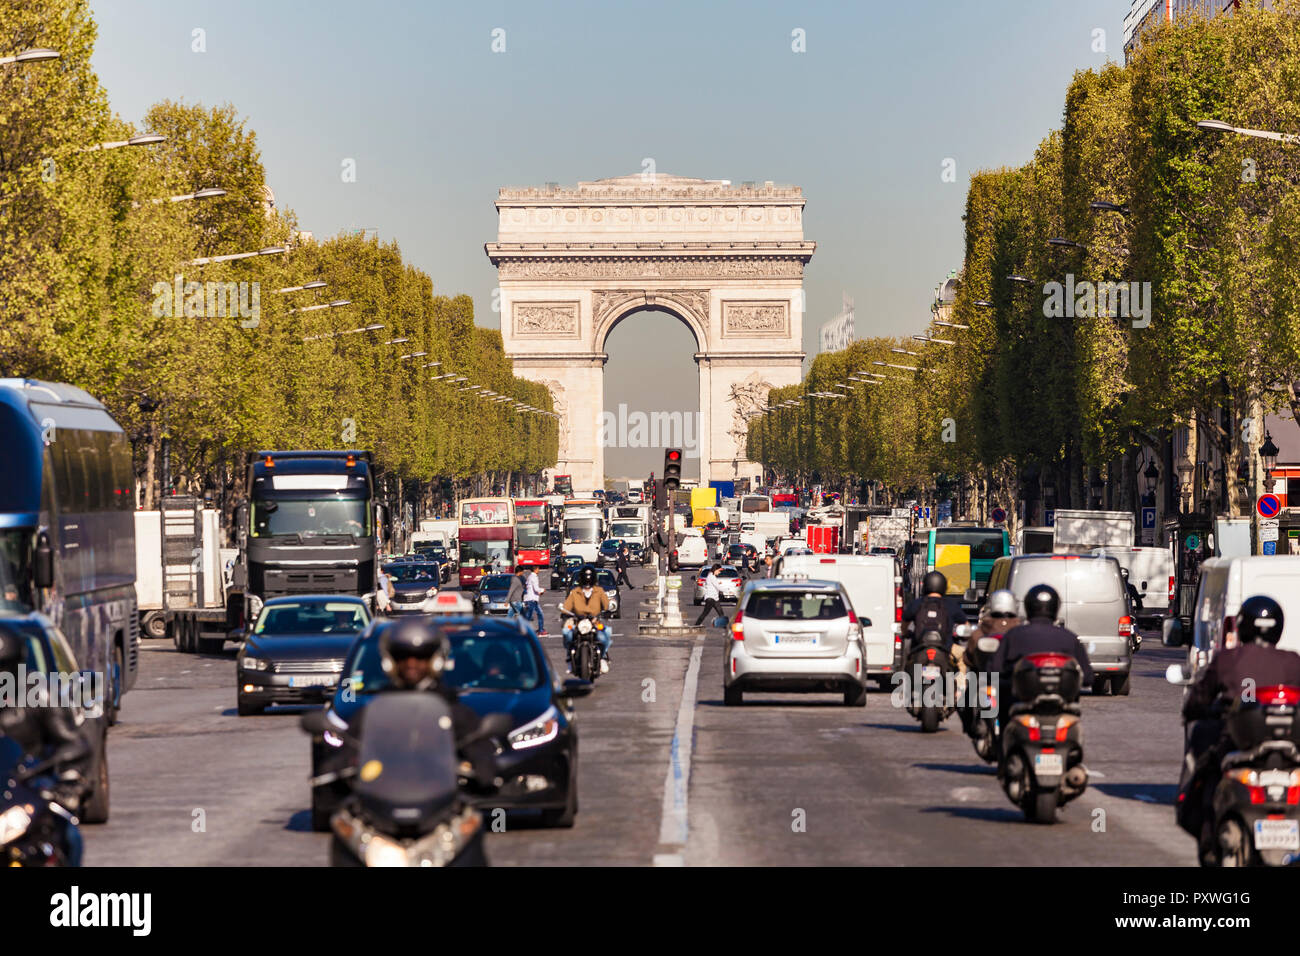 France, Paris, Champs-Elysees, Arc de Triomphe de l’Etoile, traffic Stock Photo